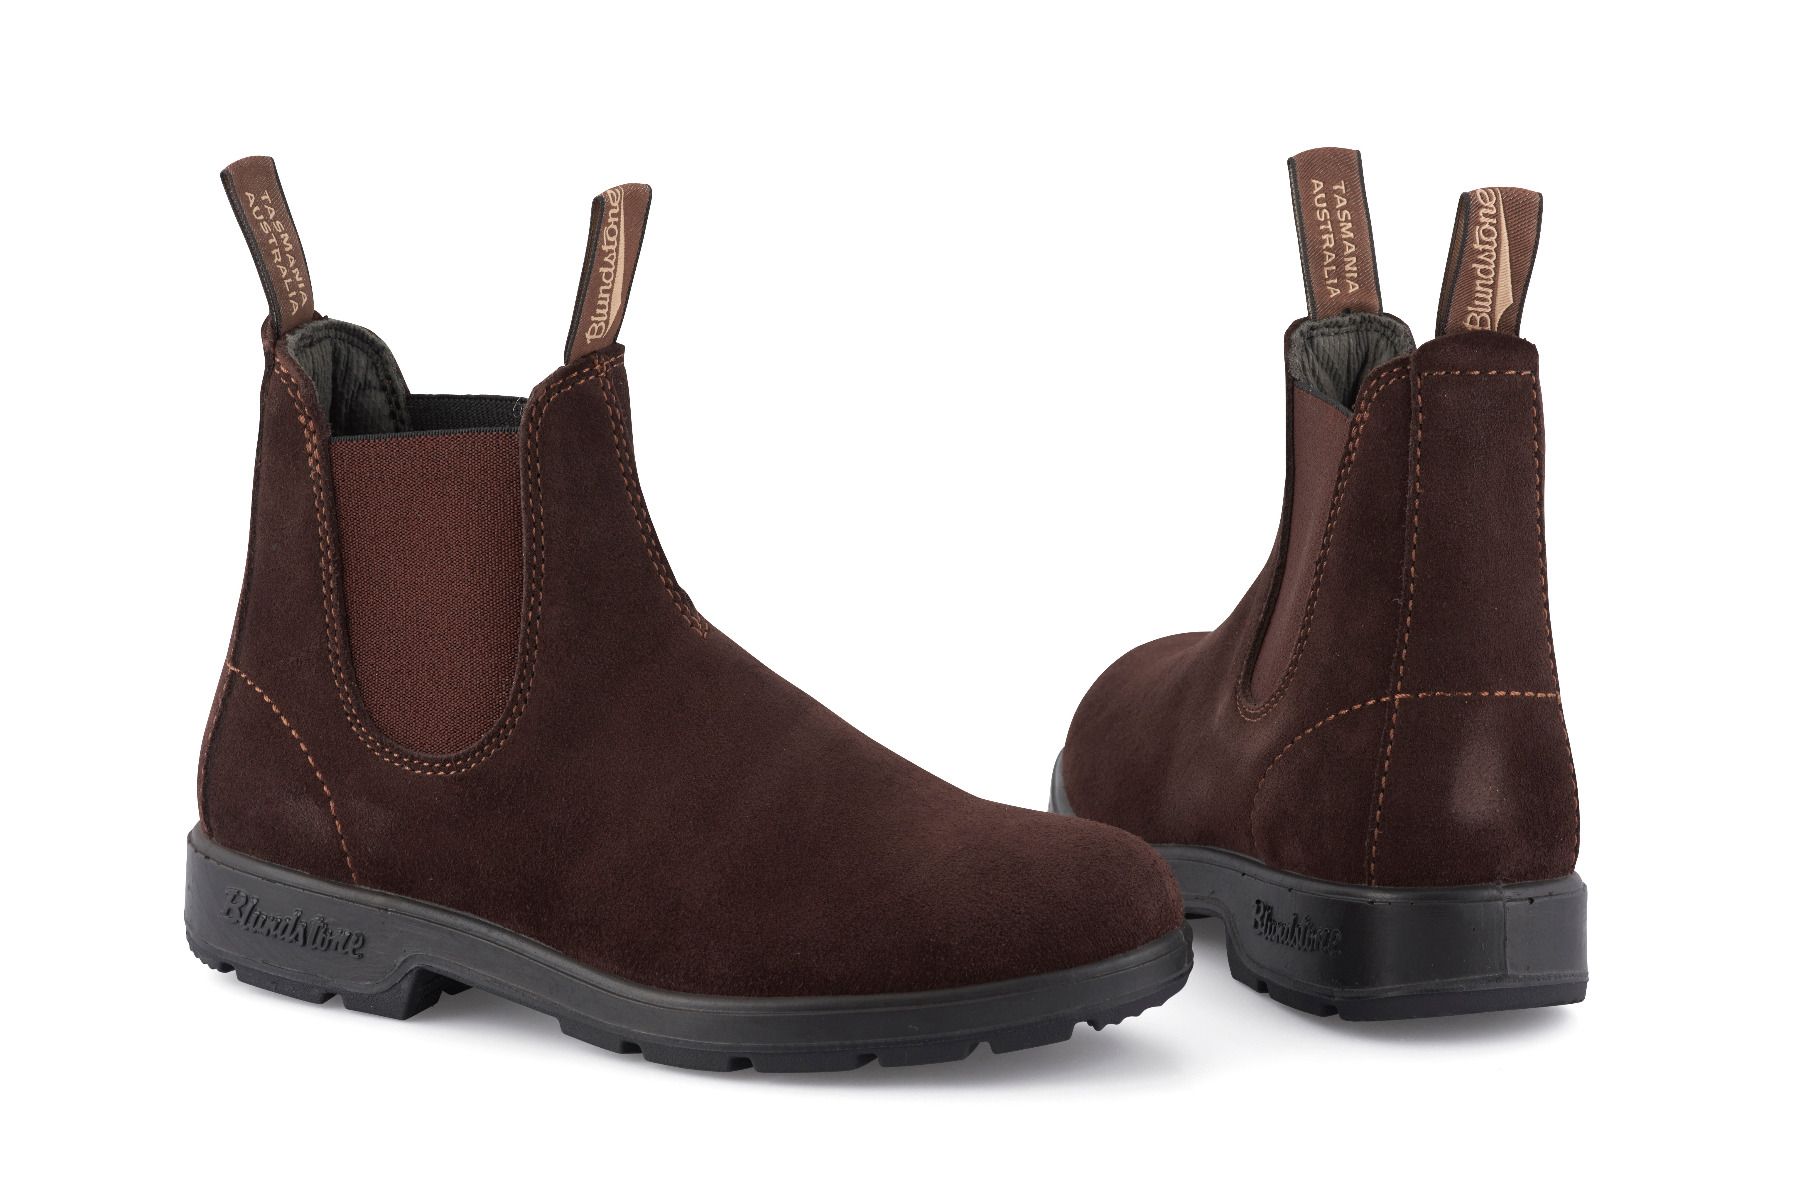 Blundstone 1458 Brown Suede Chelsea Boots: Buy Online - Happy Gentleman